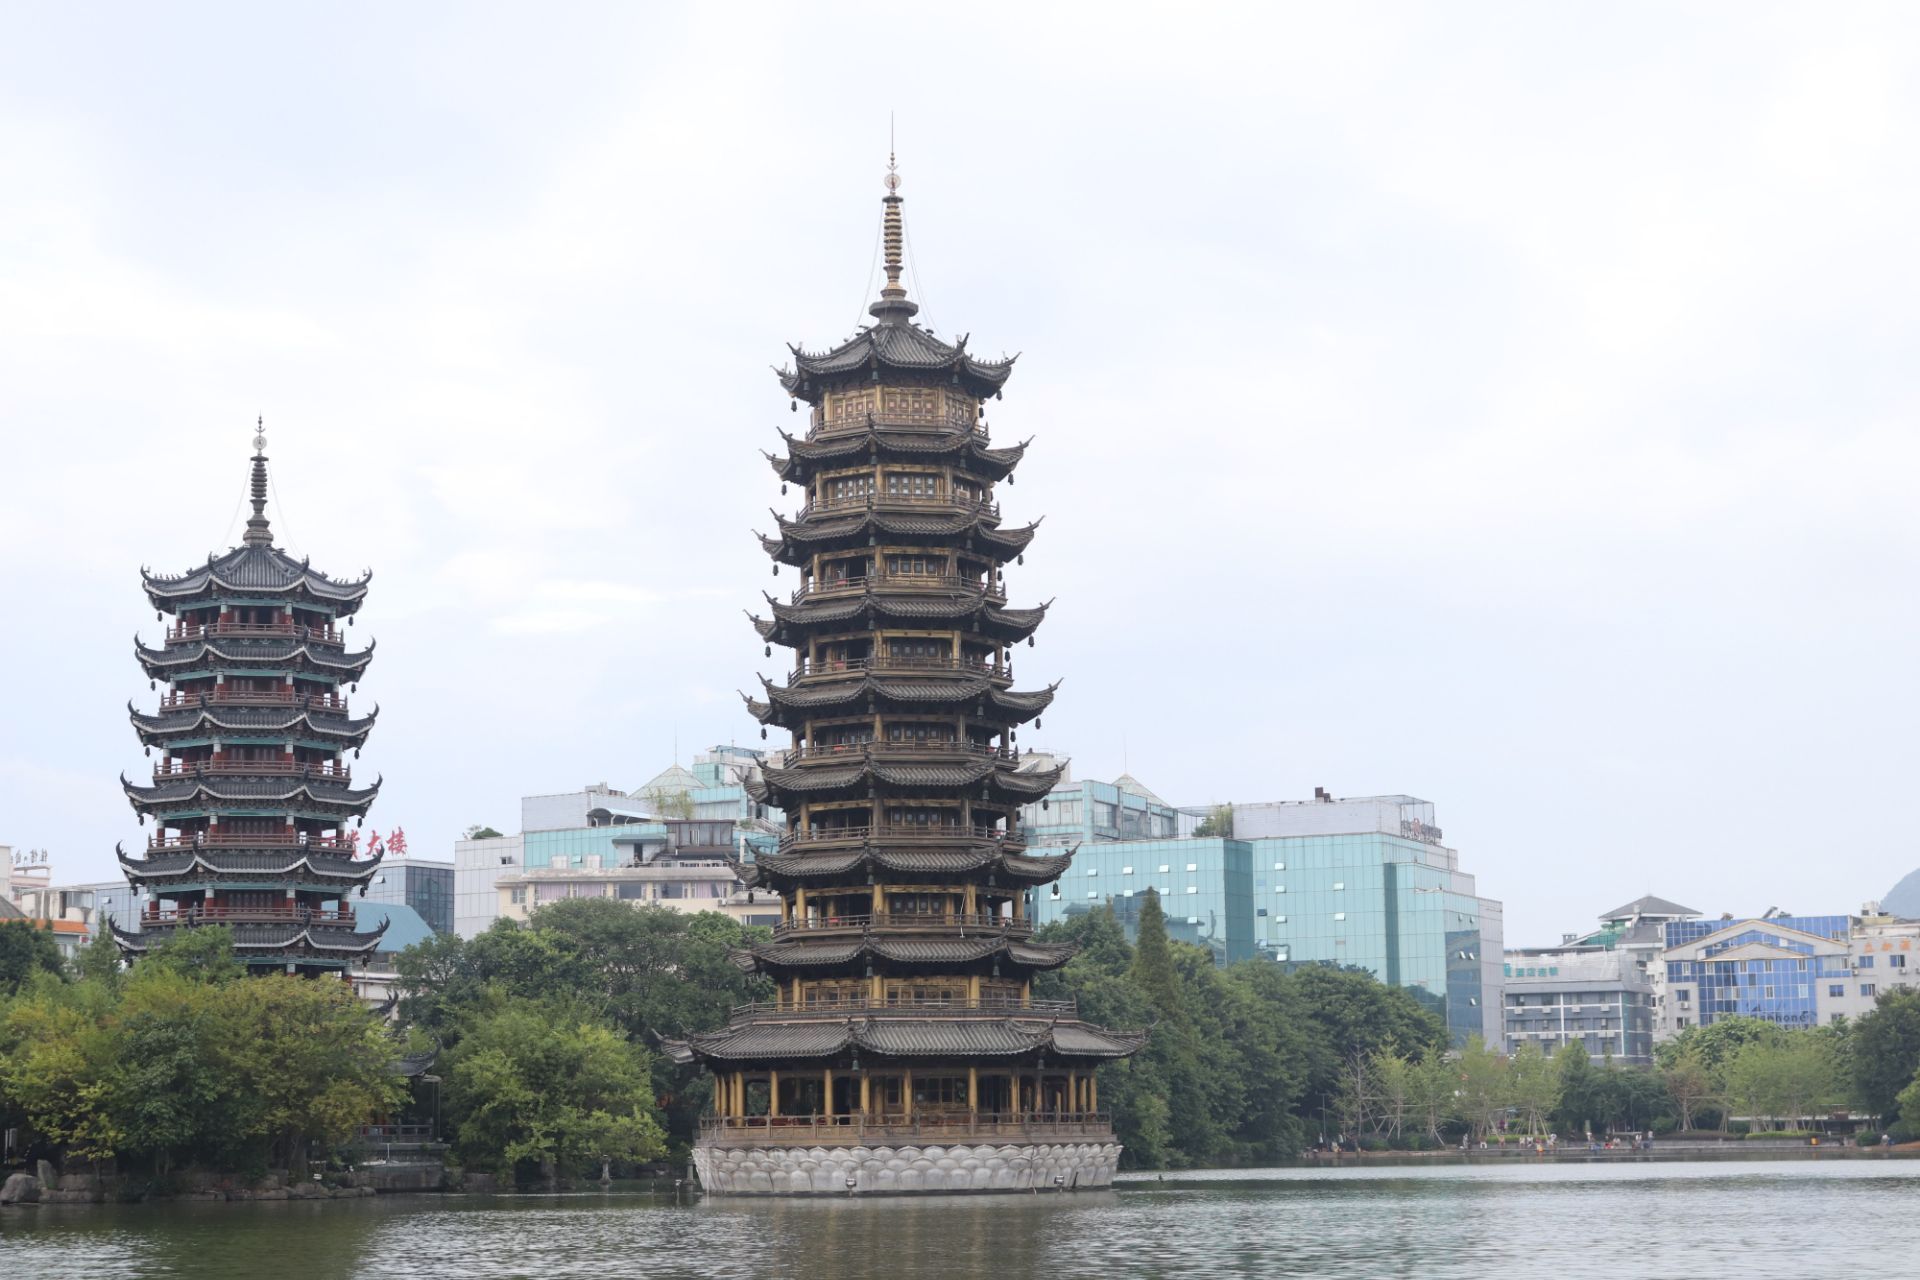 【携程攻略】桂林日月双塔景点,两个小塔，在逛两江四湖时顺道就游览了，晚上如果有灯光会漂亮